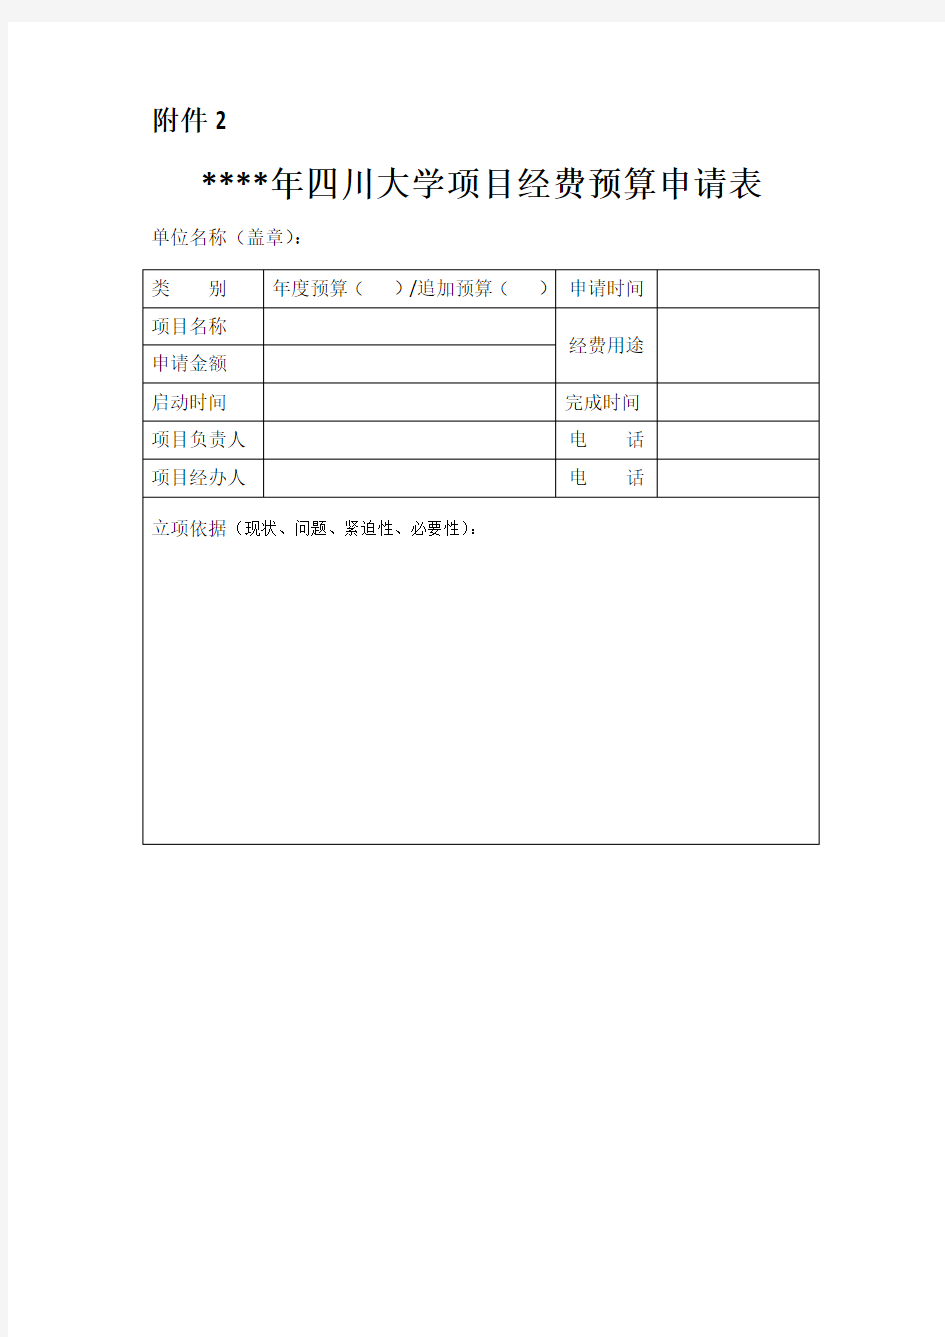 四川大学项目经费预算申请表